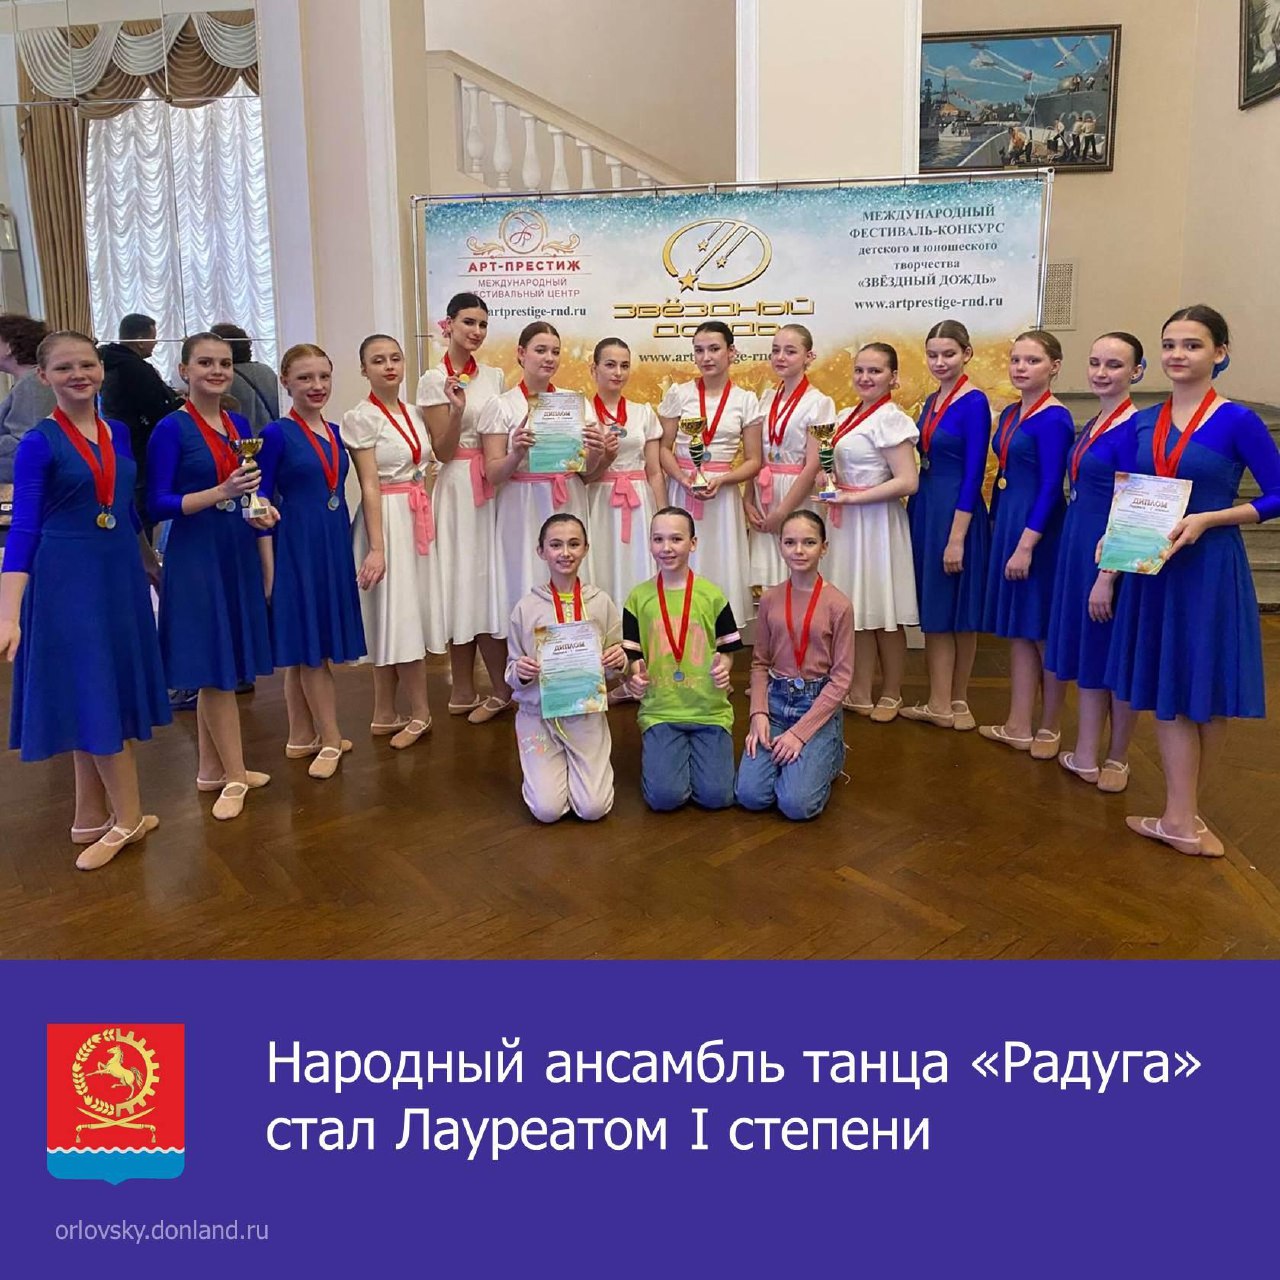 Народный ансамбль танца «Радуга» стал лауреатом I степени